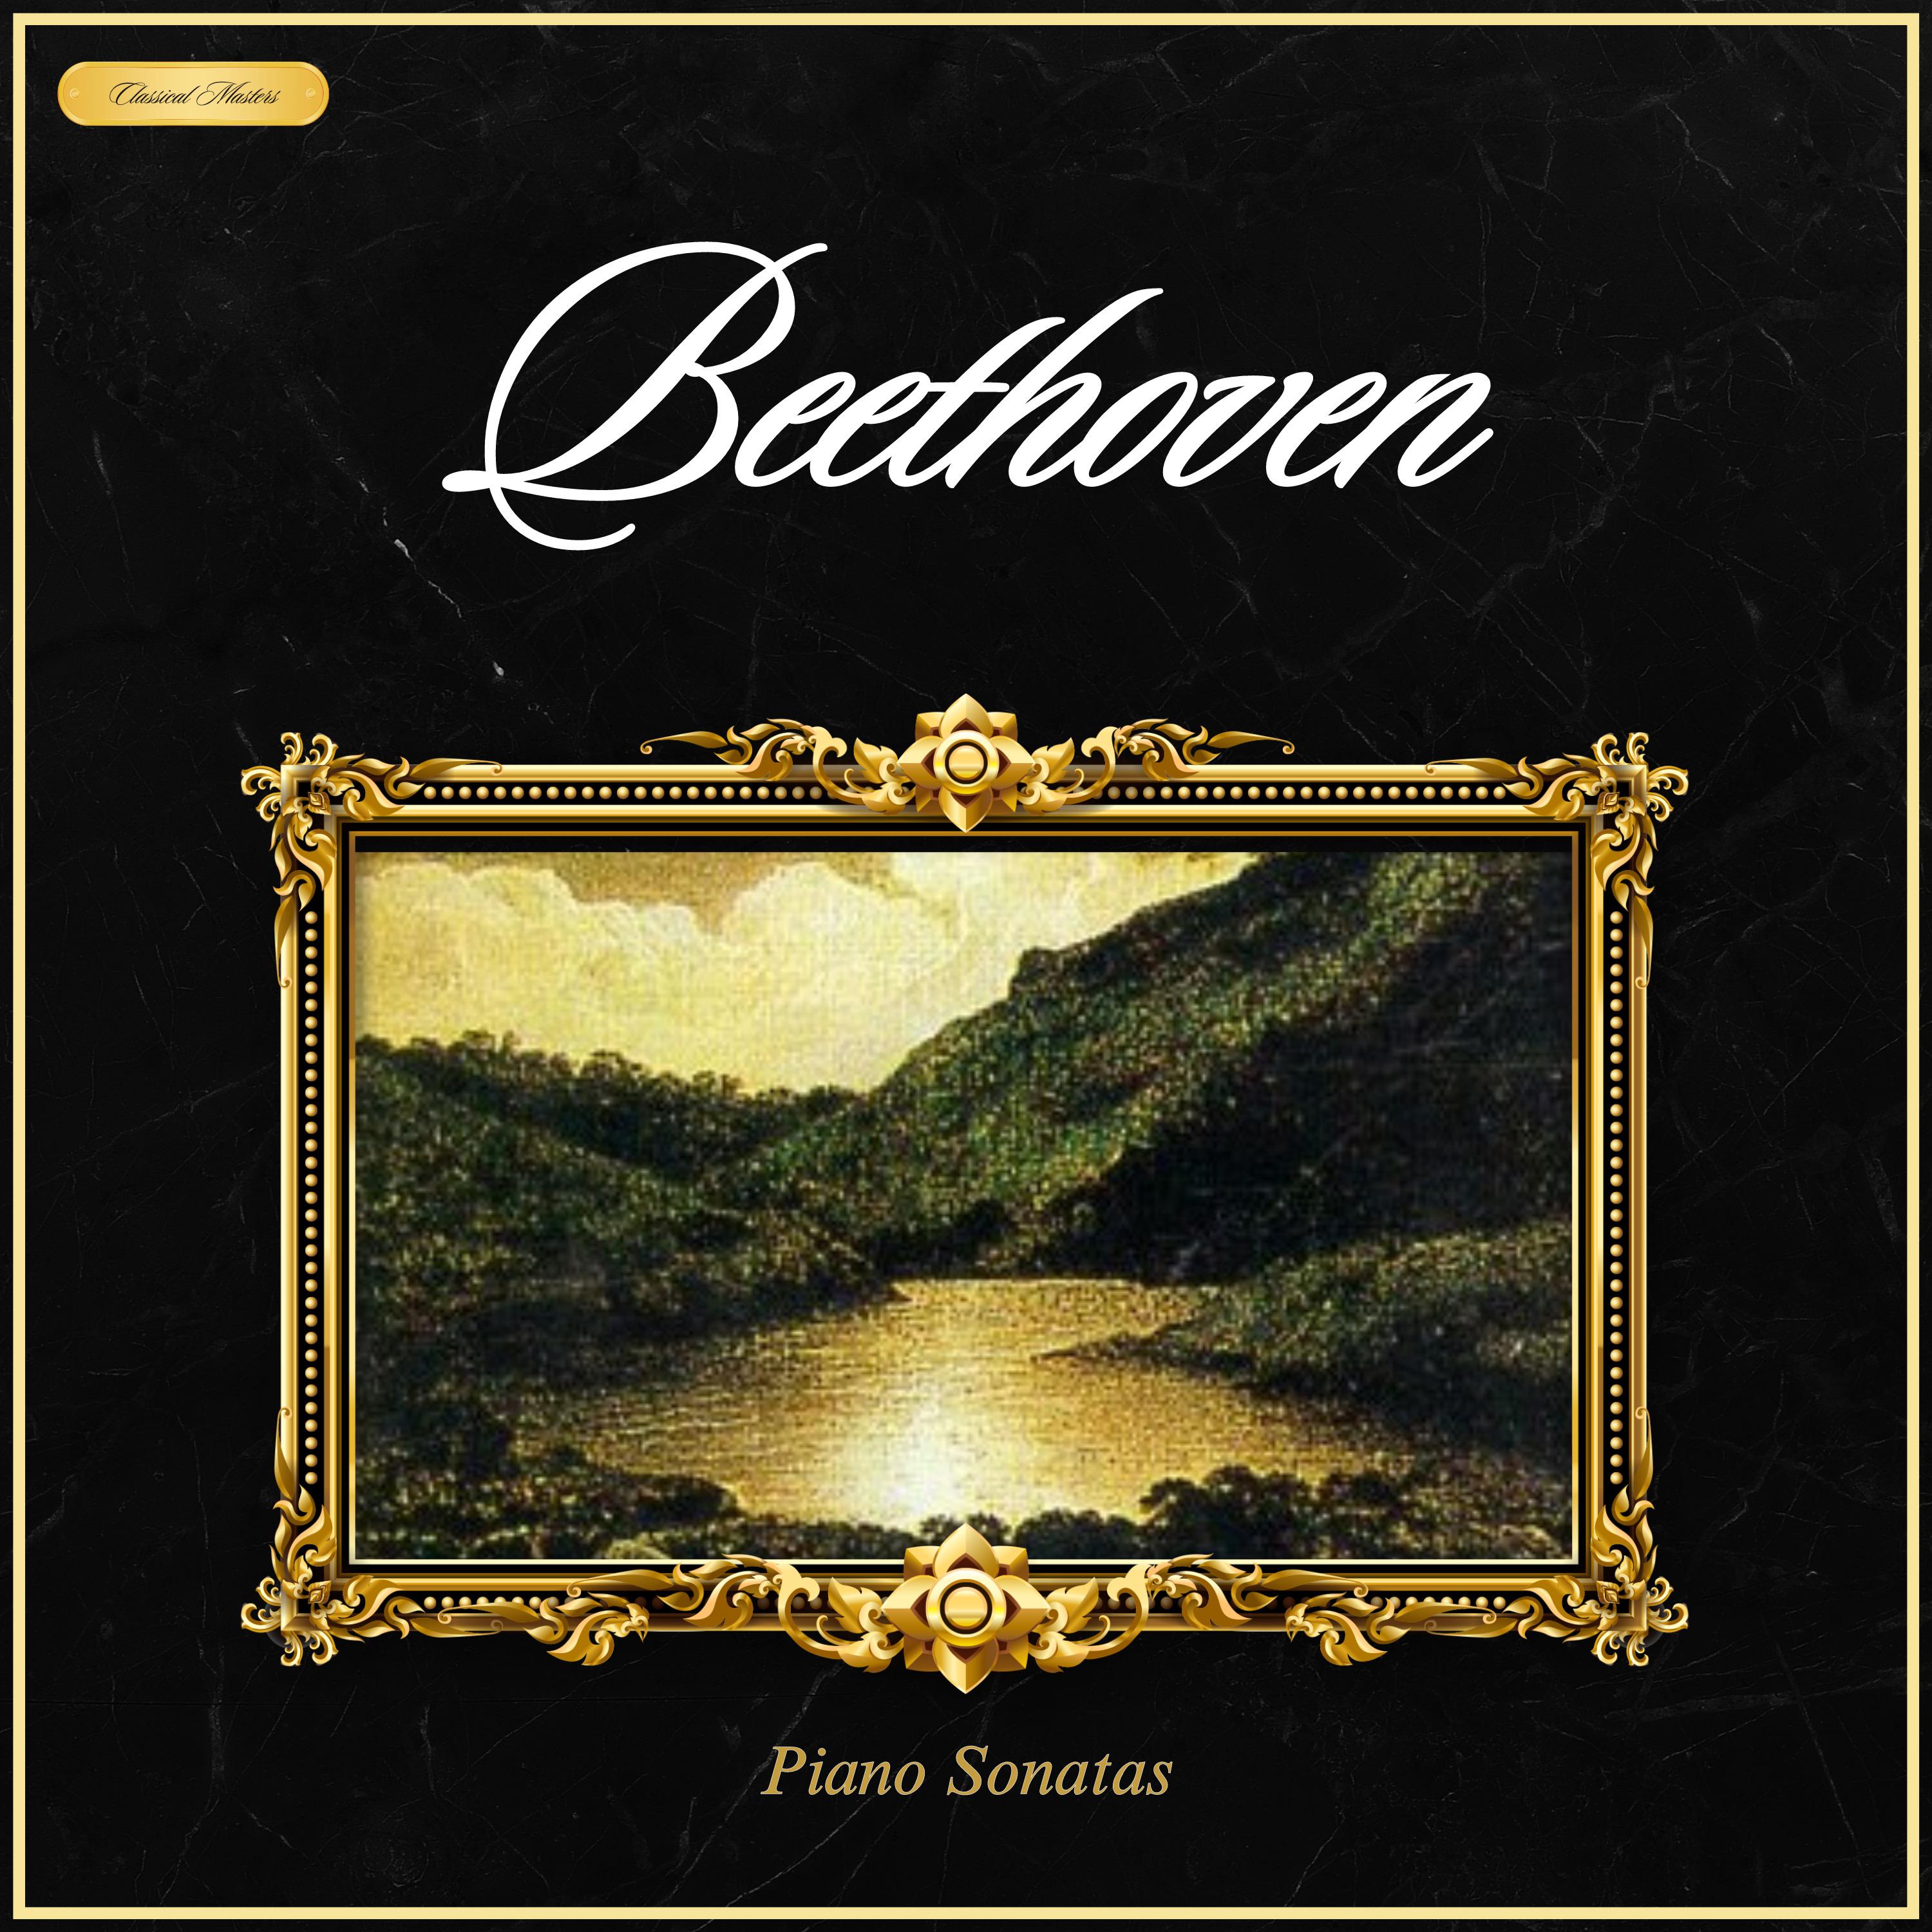 Friedrich Gulda - Piano Sonata #14 In C Sharp Minor, Op. 27 2, Moonlight - 3. Presto Agitato